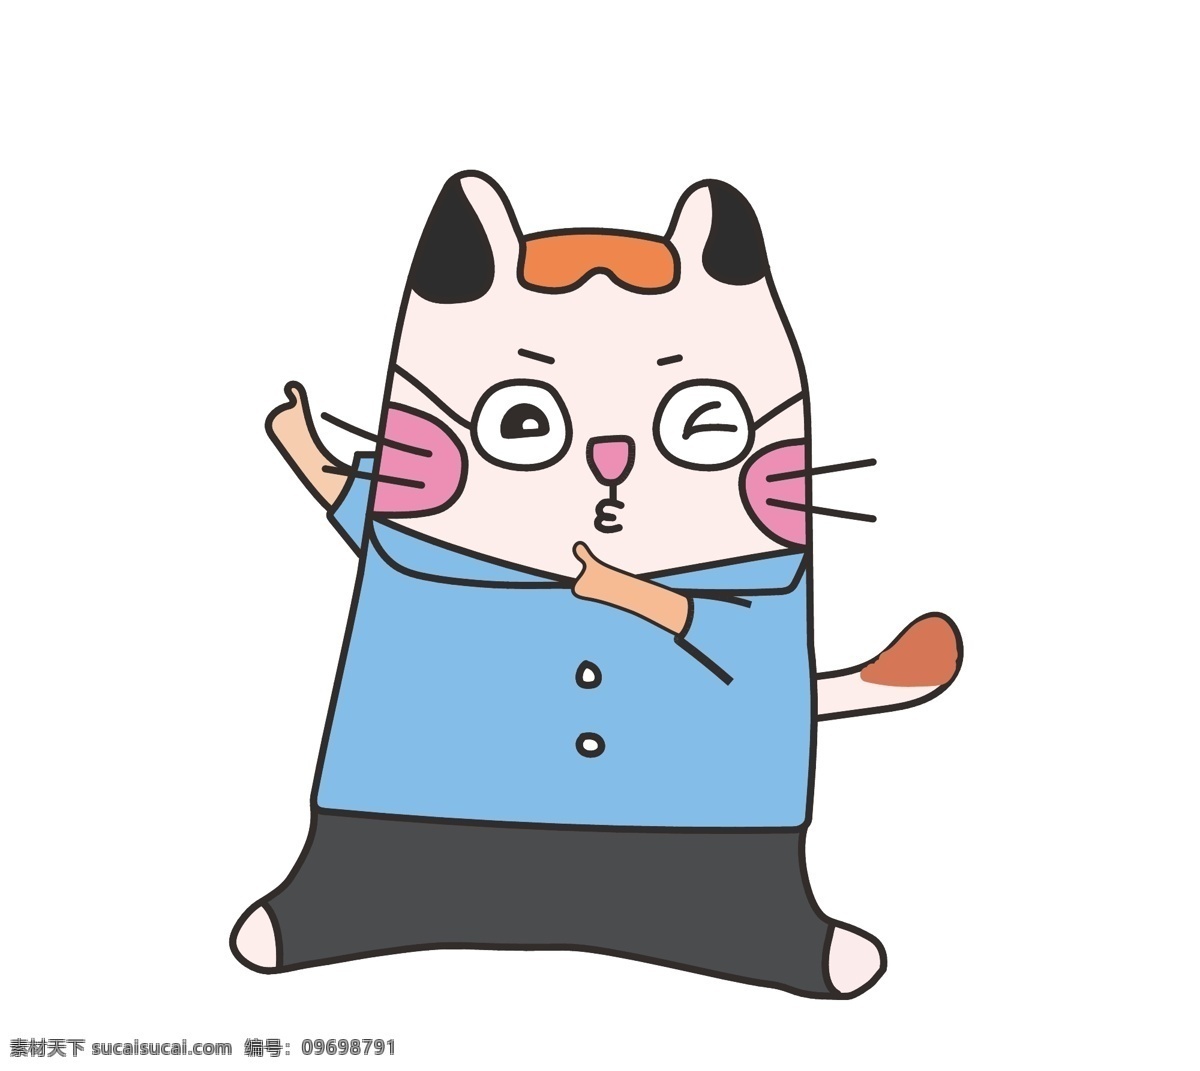 可爱猫咪 卡通猫咪 线描 卡通 可爱 儿童 插画 动漫动画